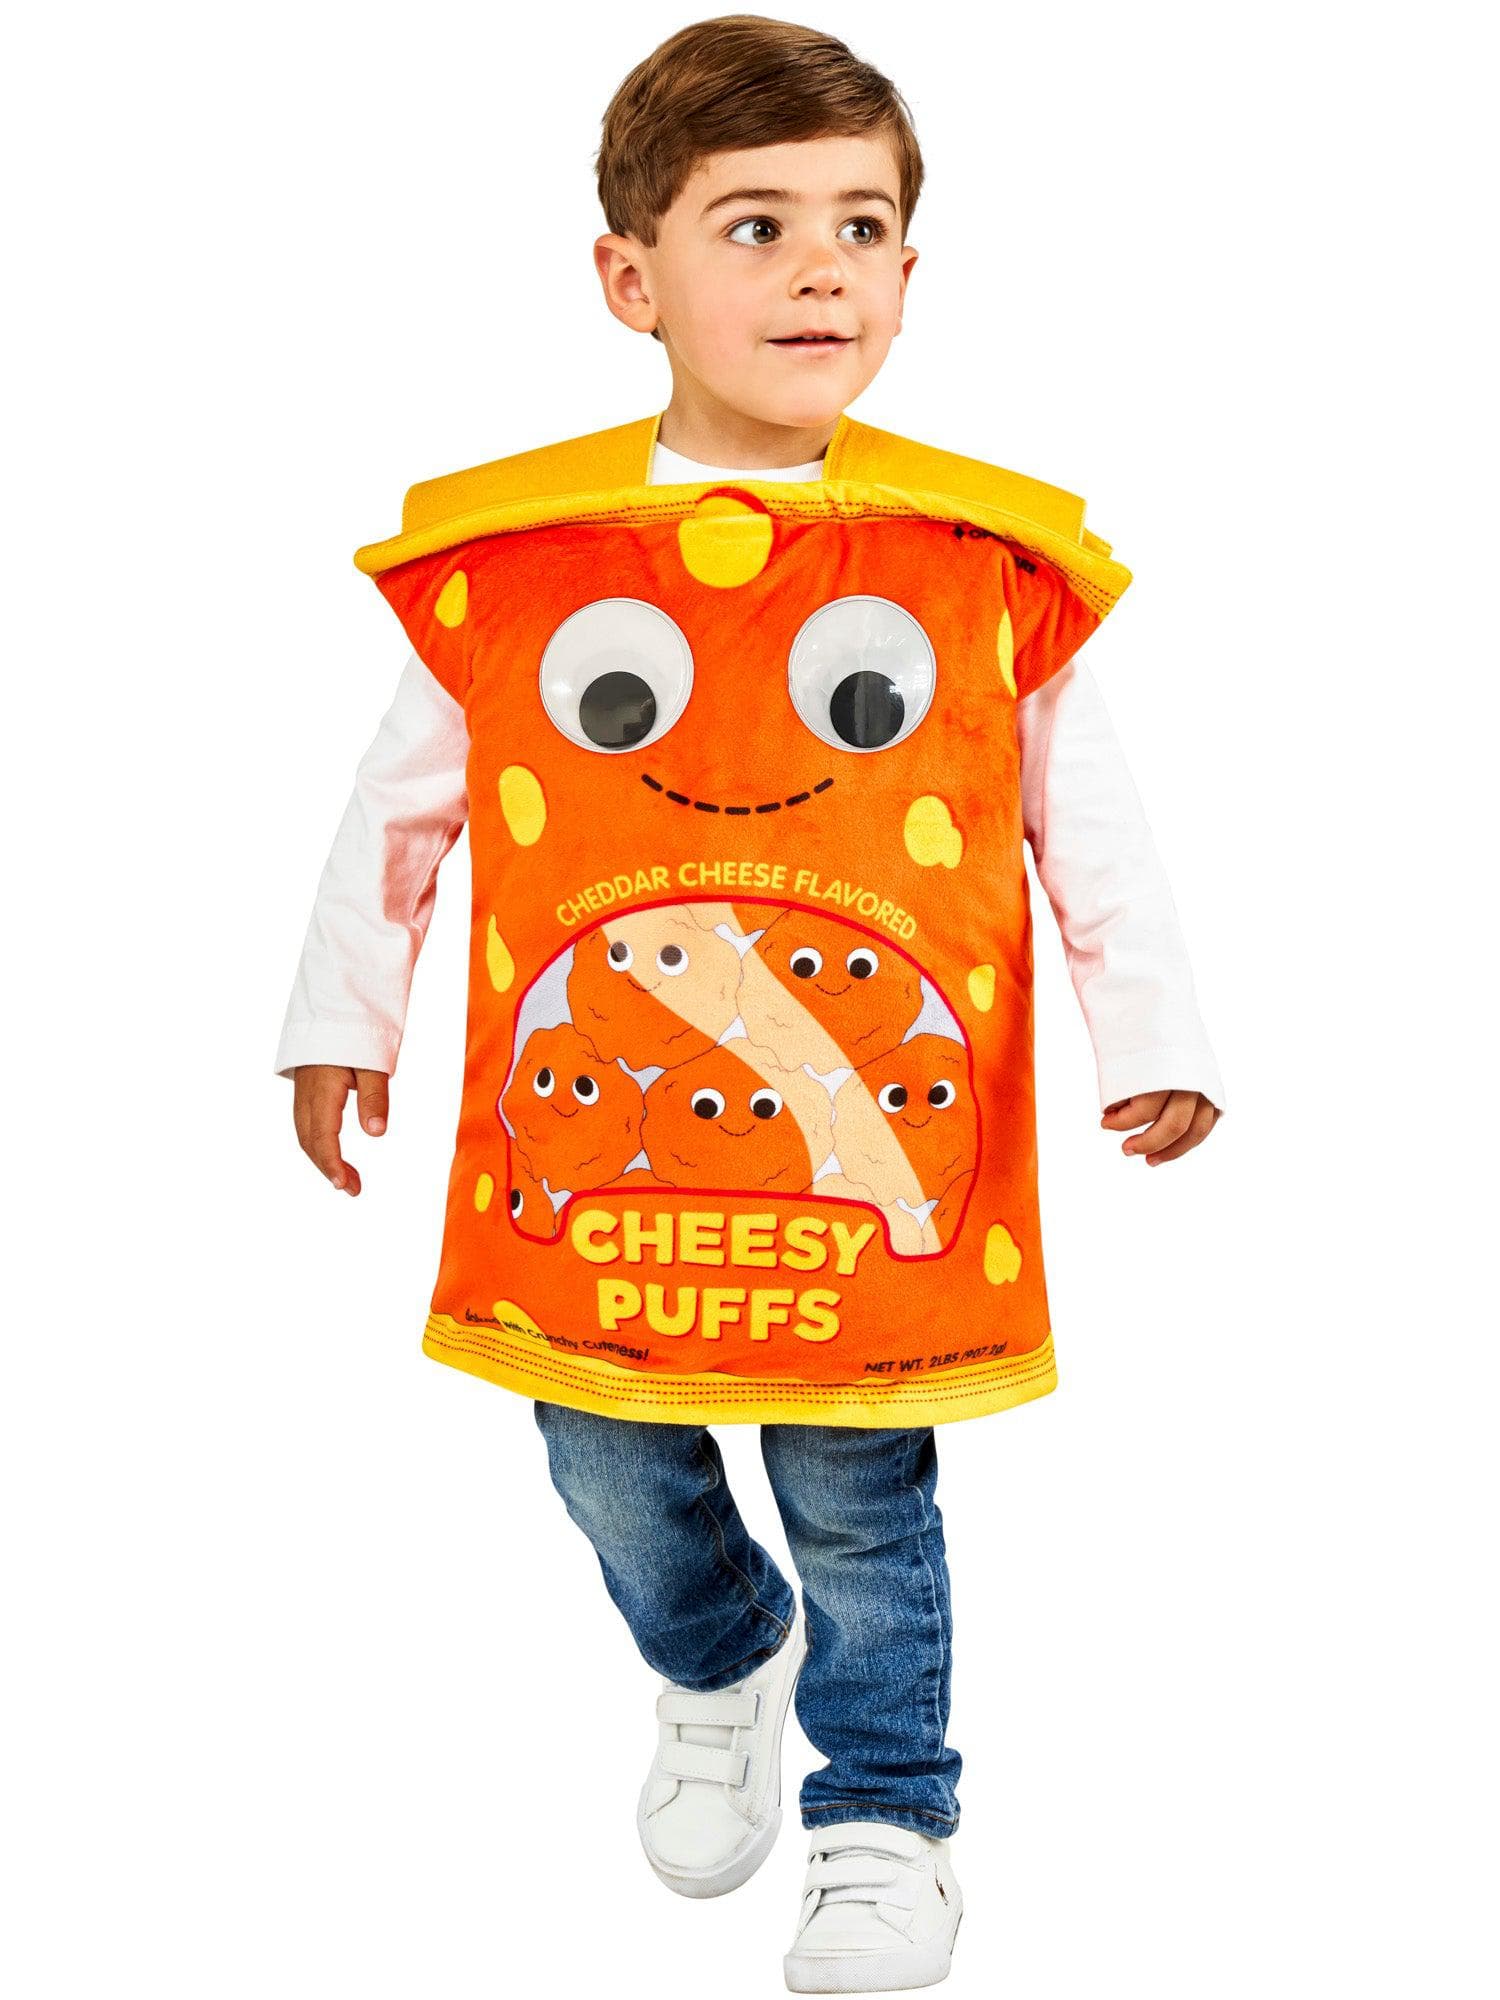 Yummy World Cheesy Puffs Kids Costume by Kidrobot - costumes.com